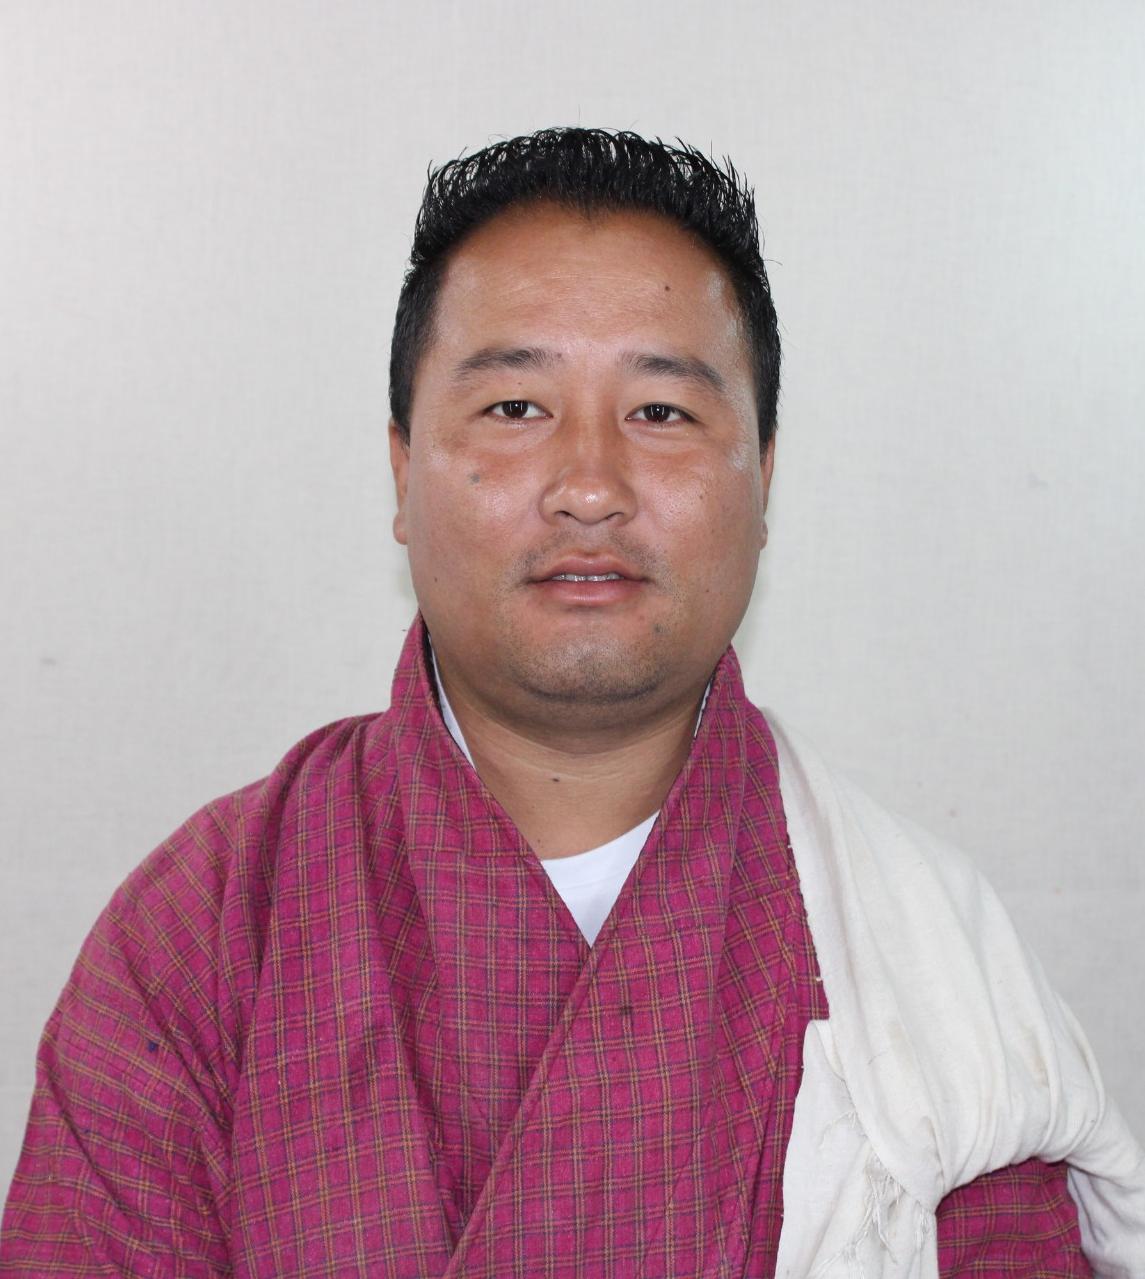 Sherab Dorji